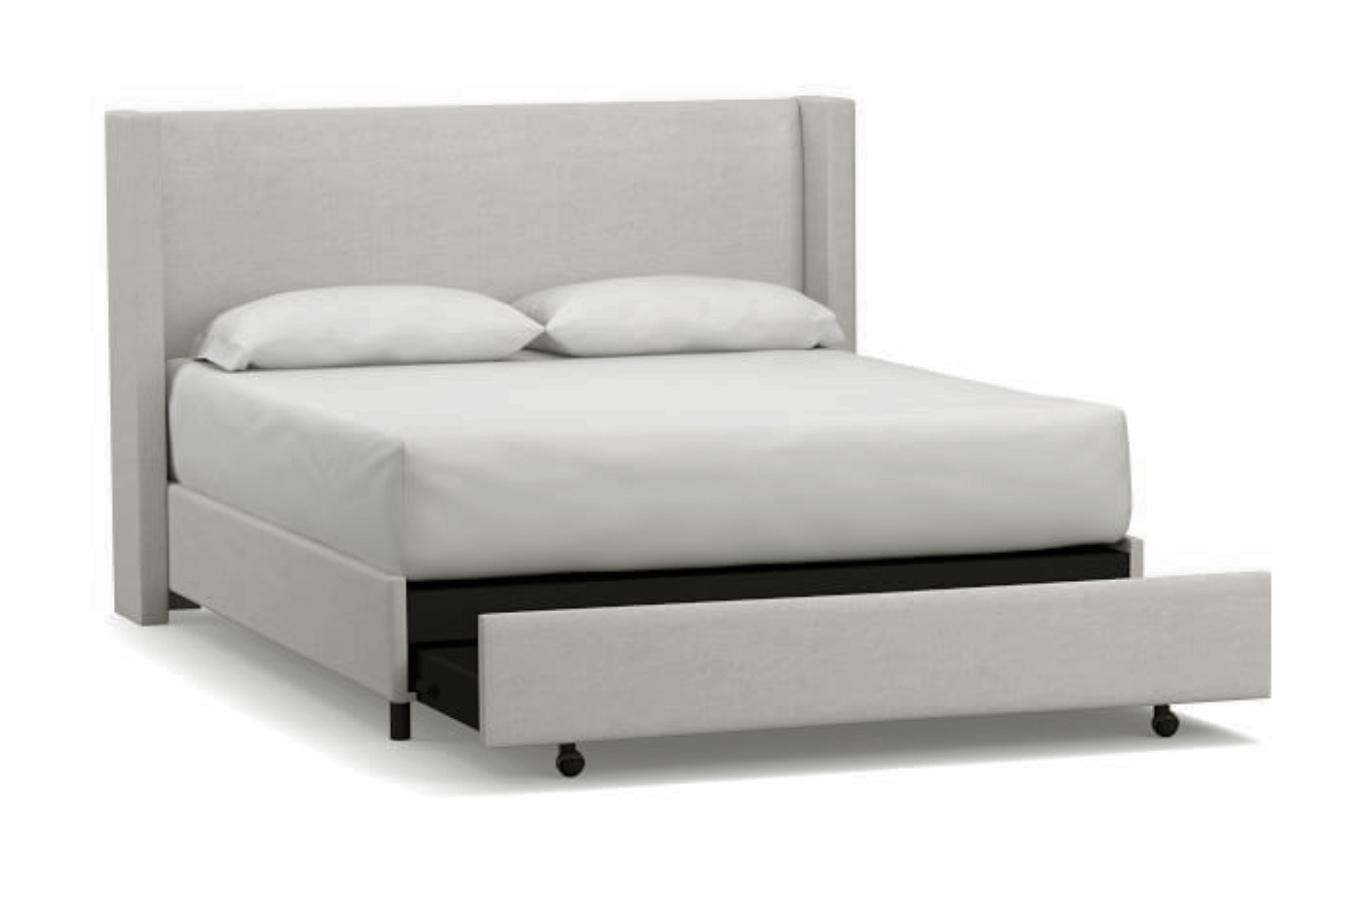 Elliot Shelter Upholstered Headboard with Footboard Storage Platform Bed, King, Basketweave Slub Ash - Image 0